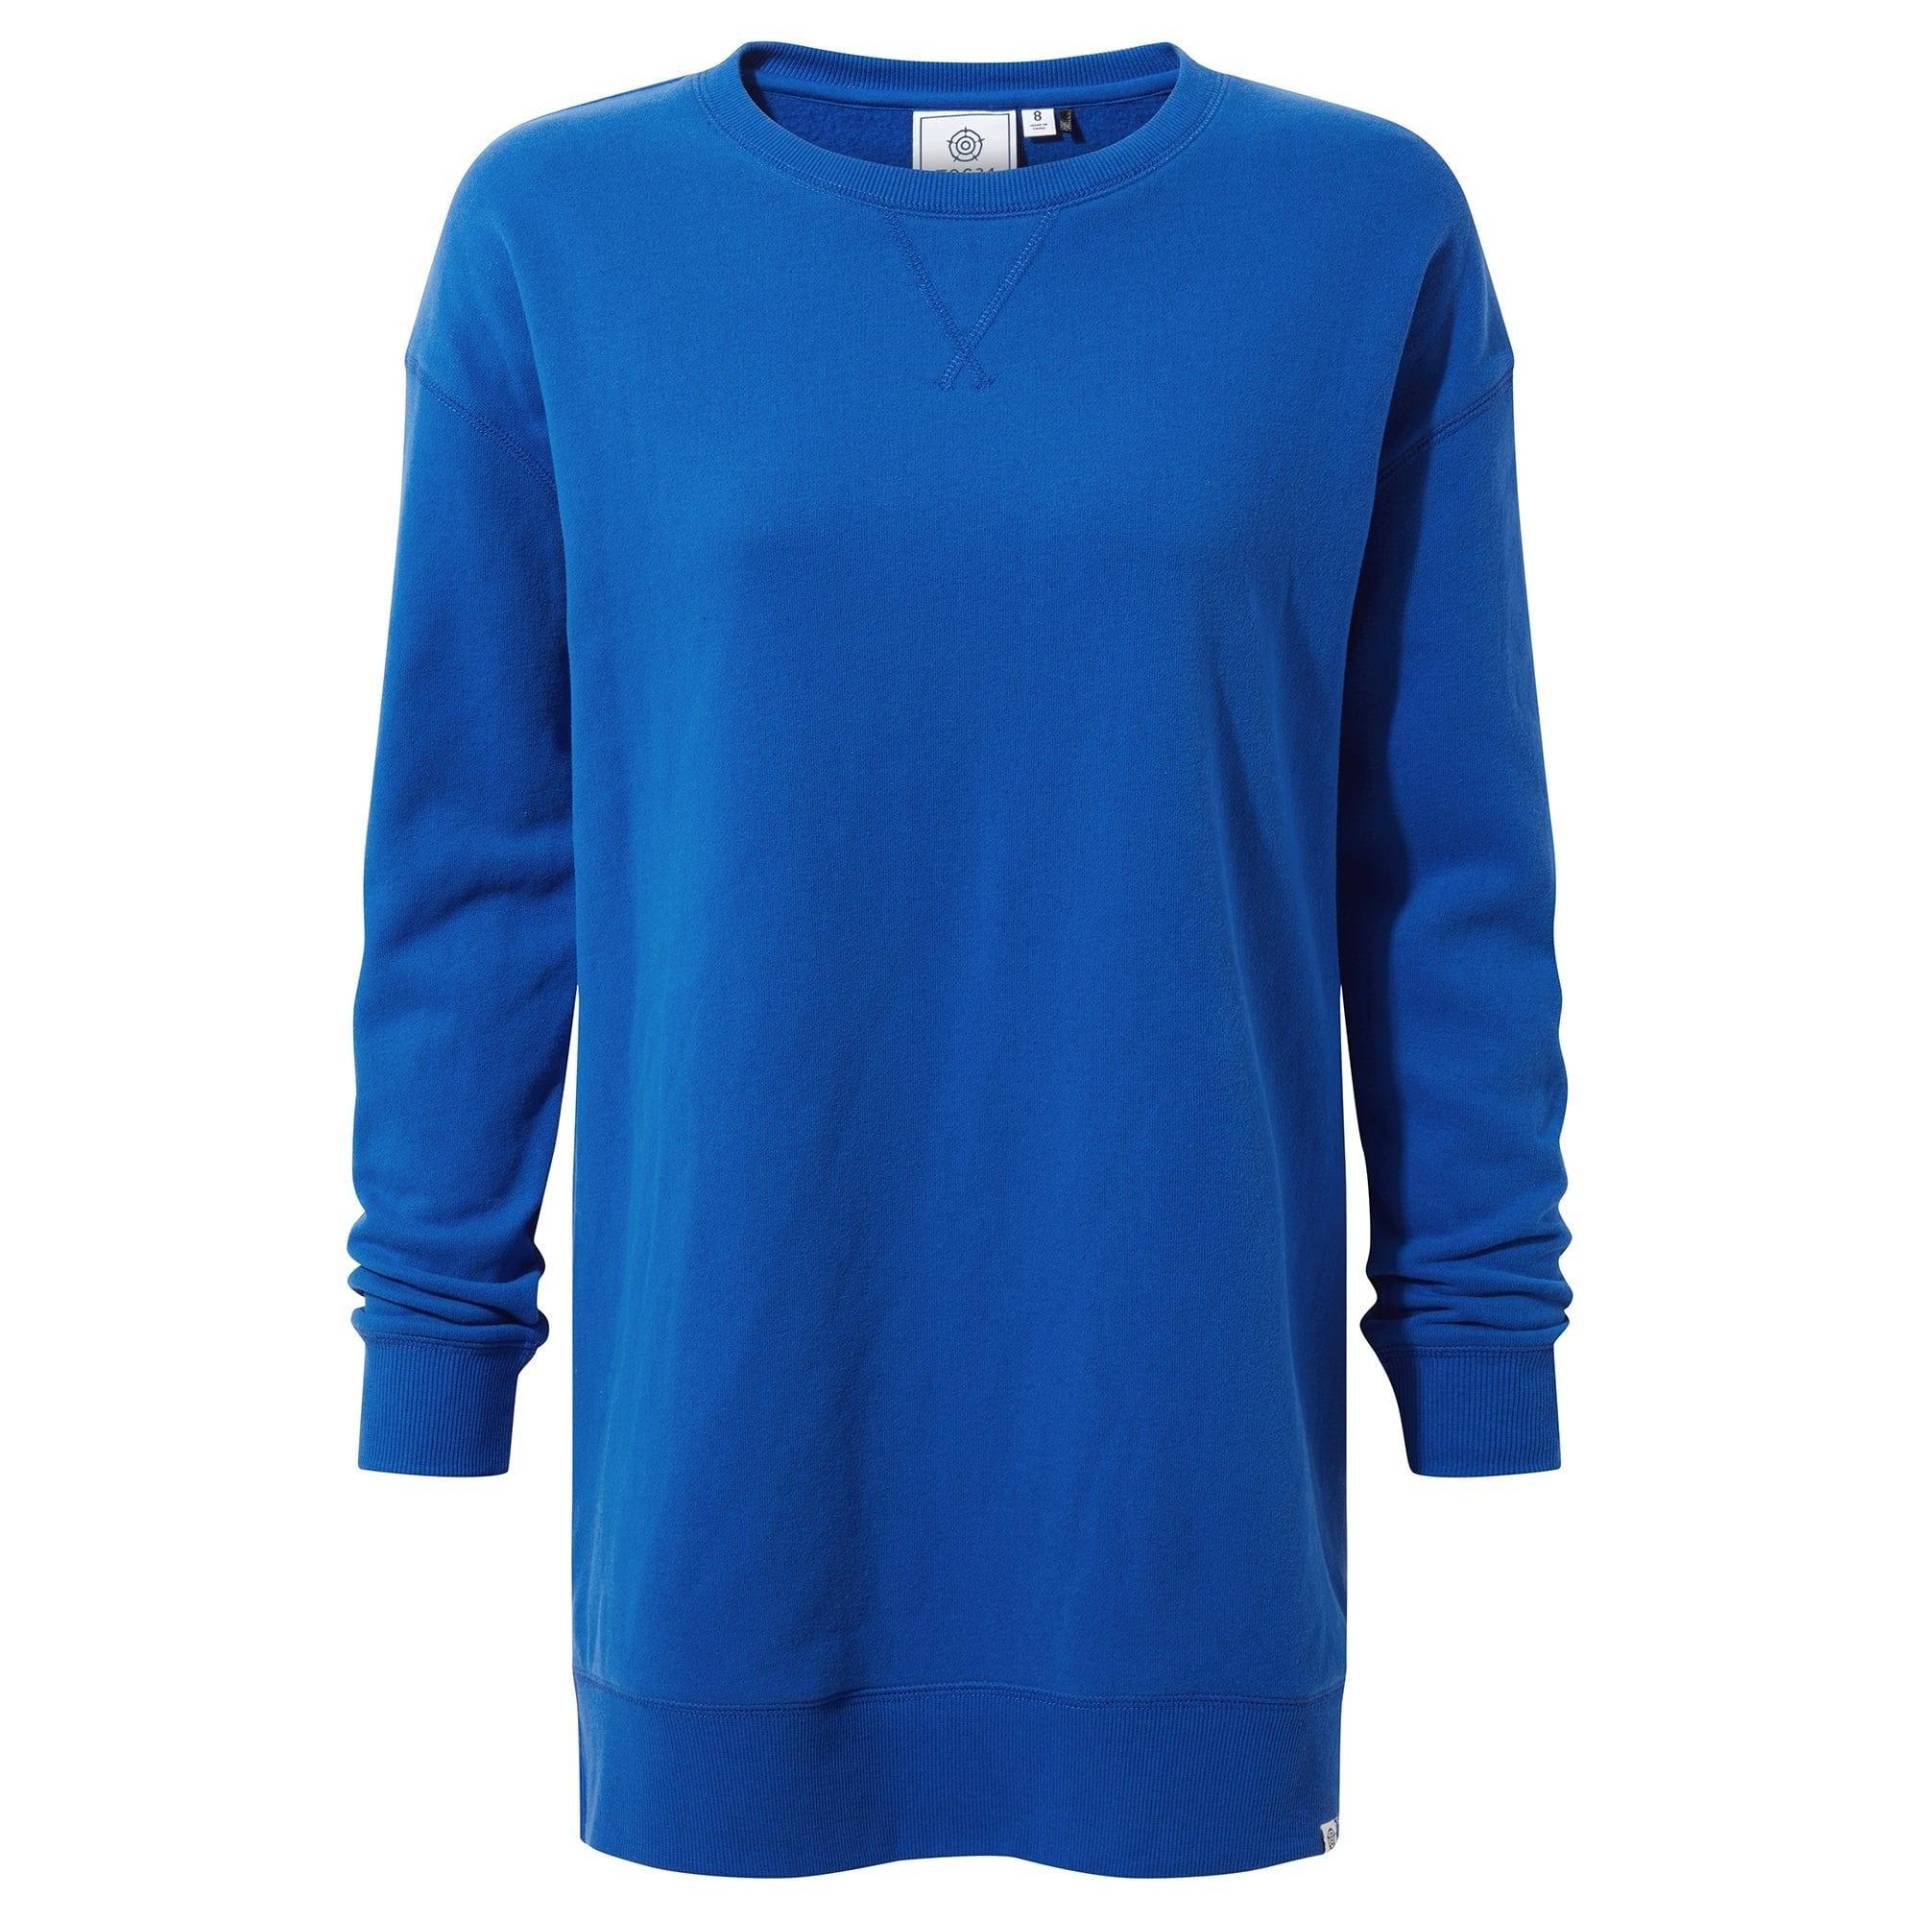 Michelle Sweatshirt Damen Bleached Blau 44 von Tog24